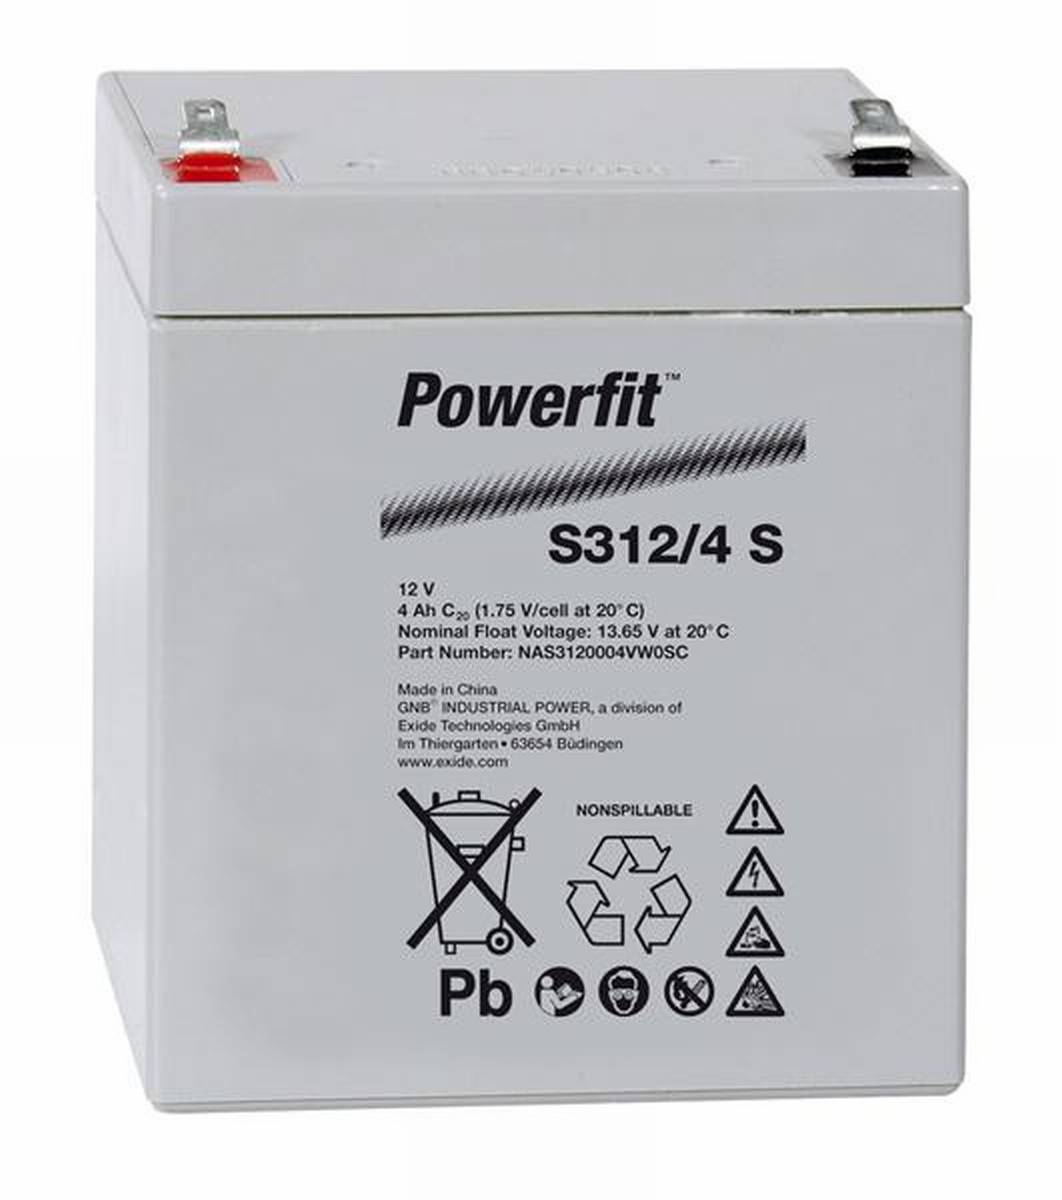 Exide Powerfit S312/4 S 12V 4Ah batteria al piombo a secco AGM